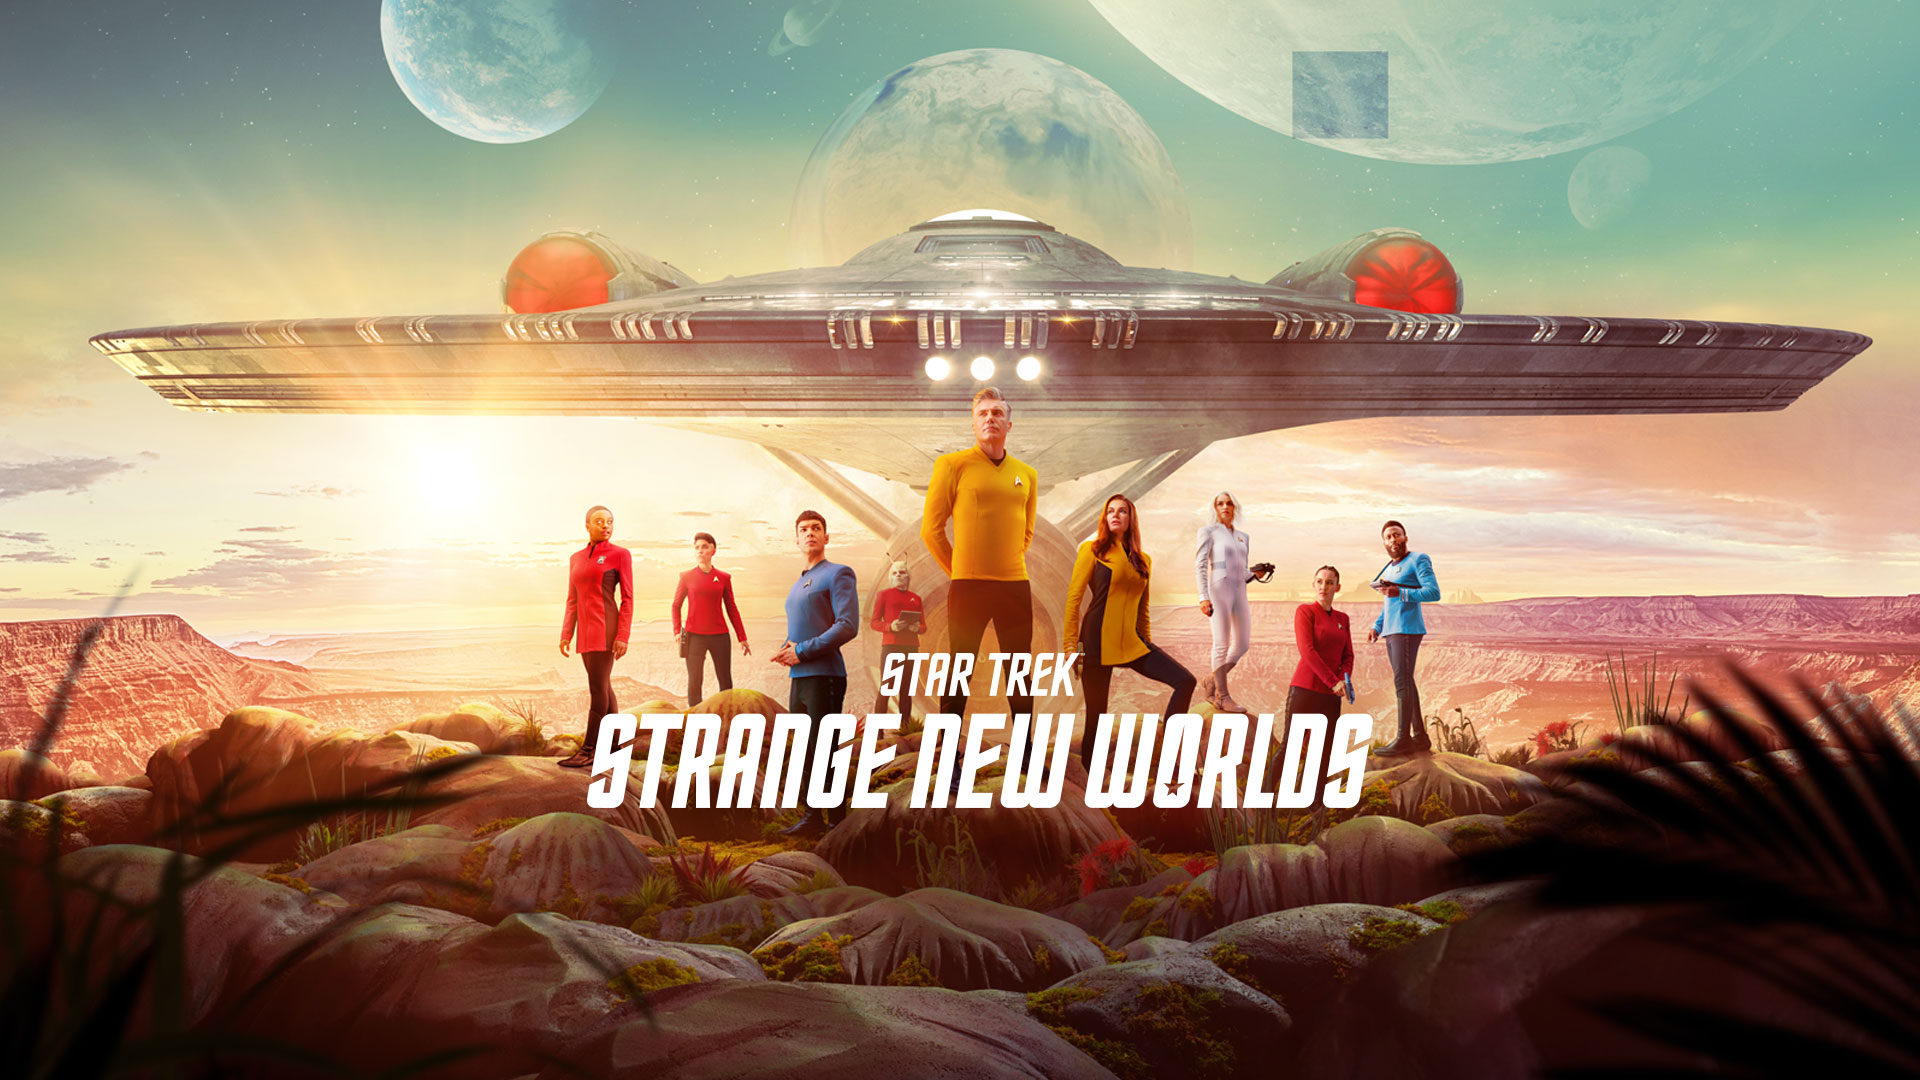 Watch Star Trek: Strange New Worlds Online